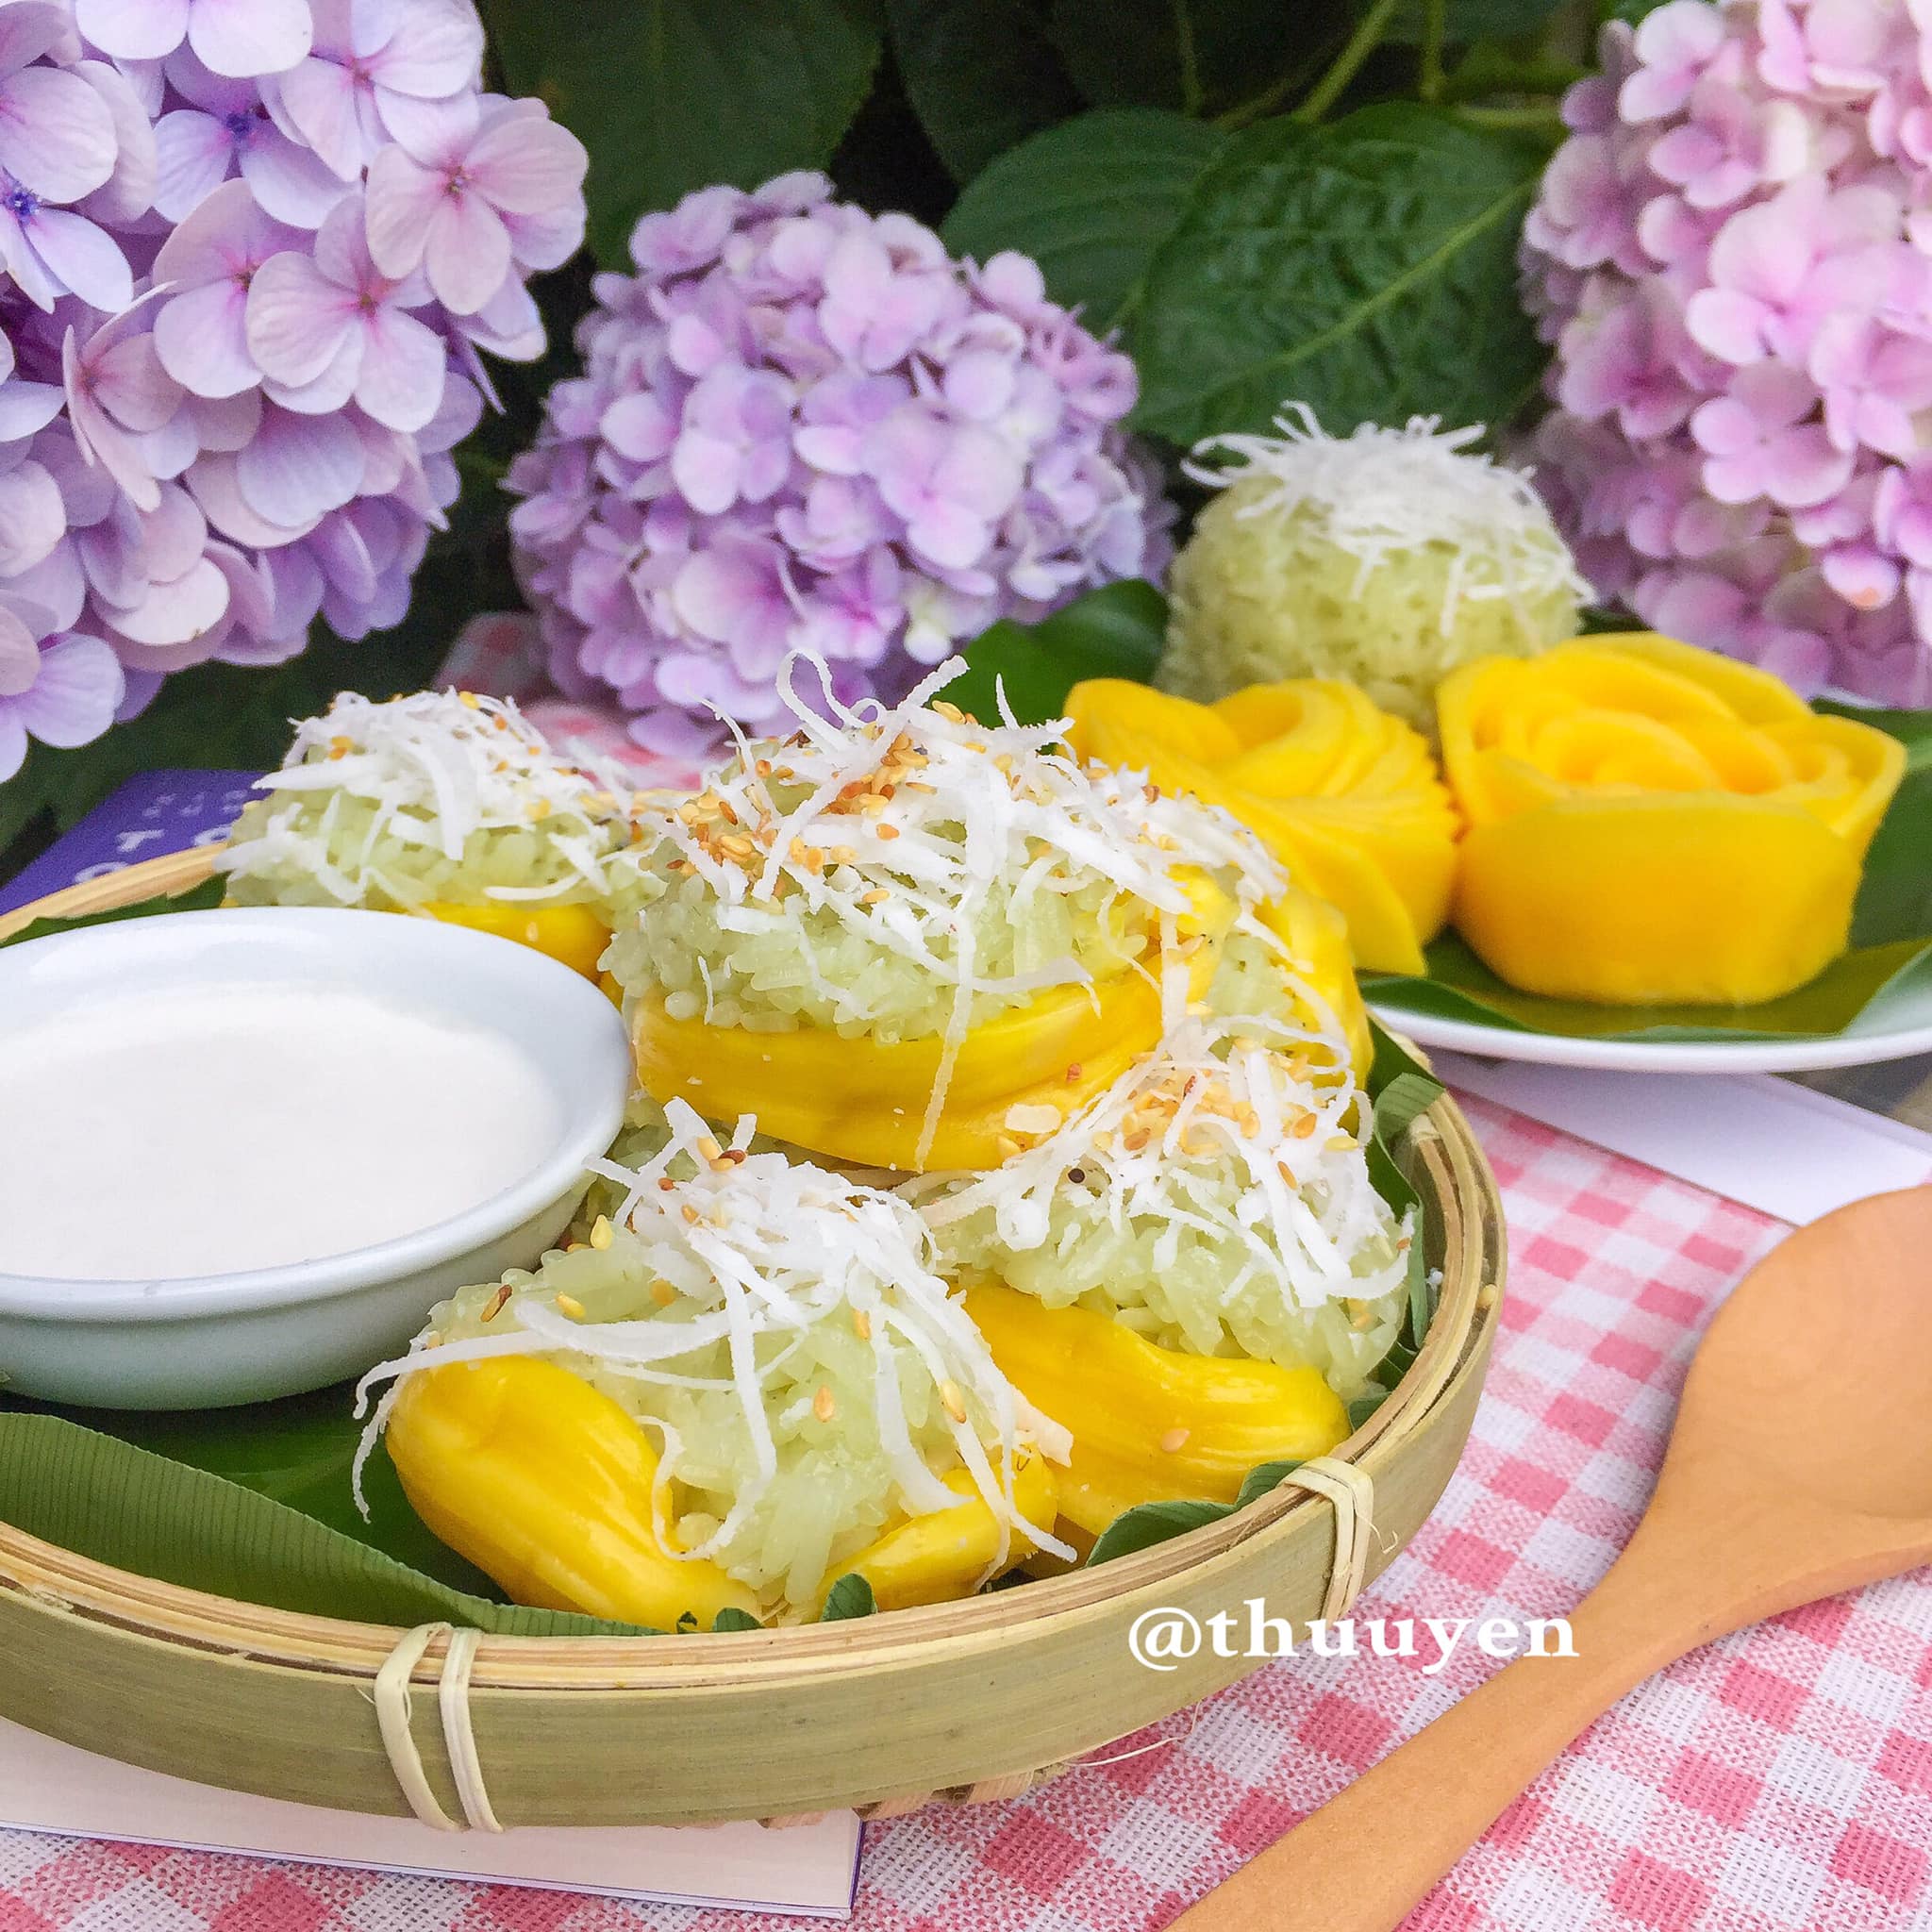 xoi mit la dua3 - Cách làm xôi mít lá dứa thơm ngon, hấp dẫn chuẩn vị Thái Lan